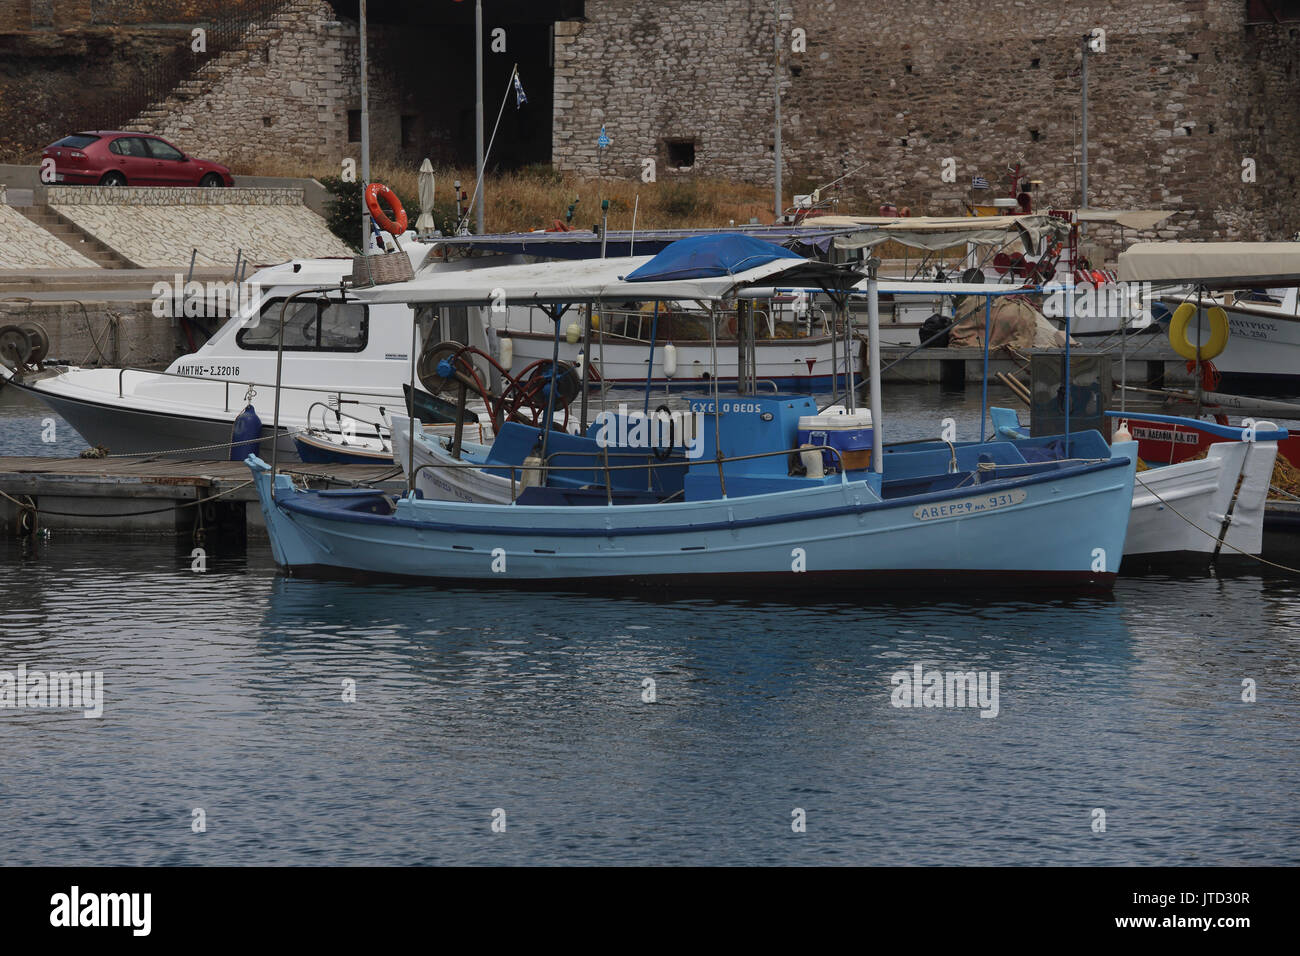 Port de Lavrio Grèce Attique bateaux de pêche Banque D'Images